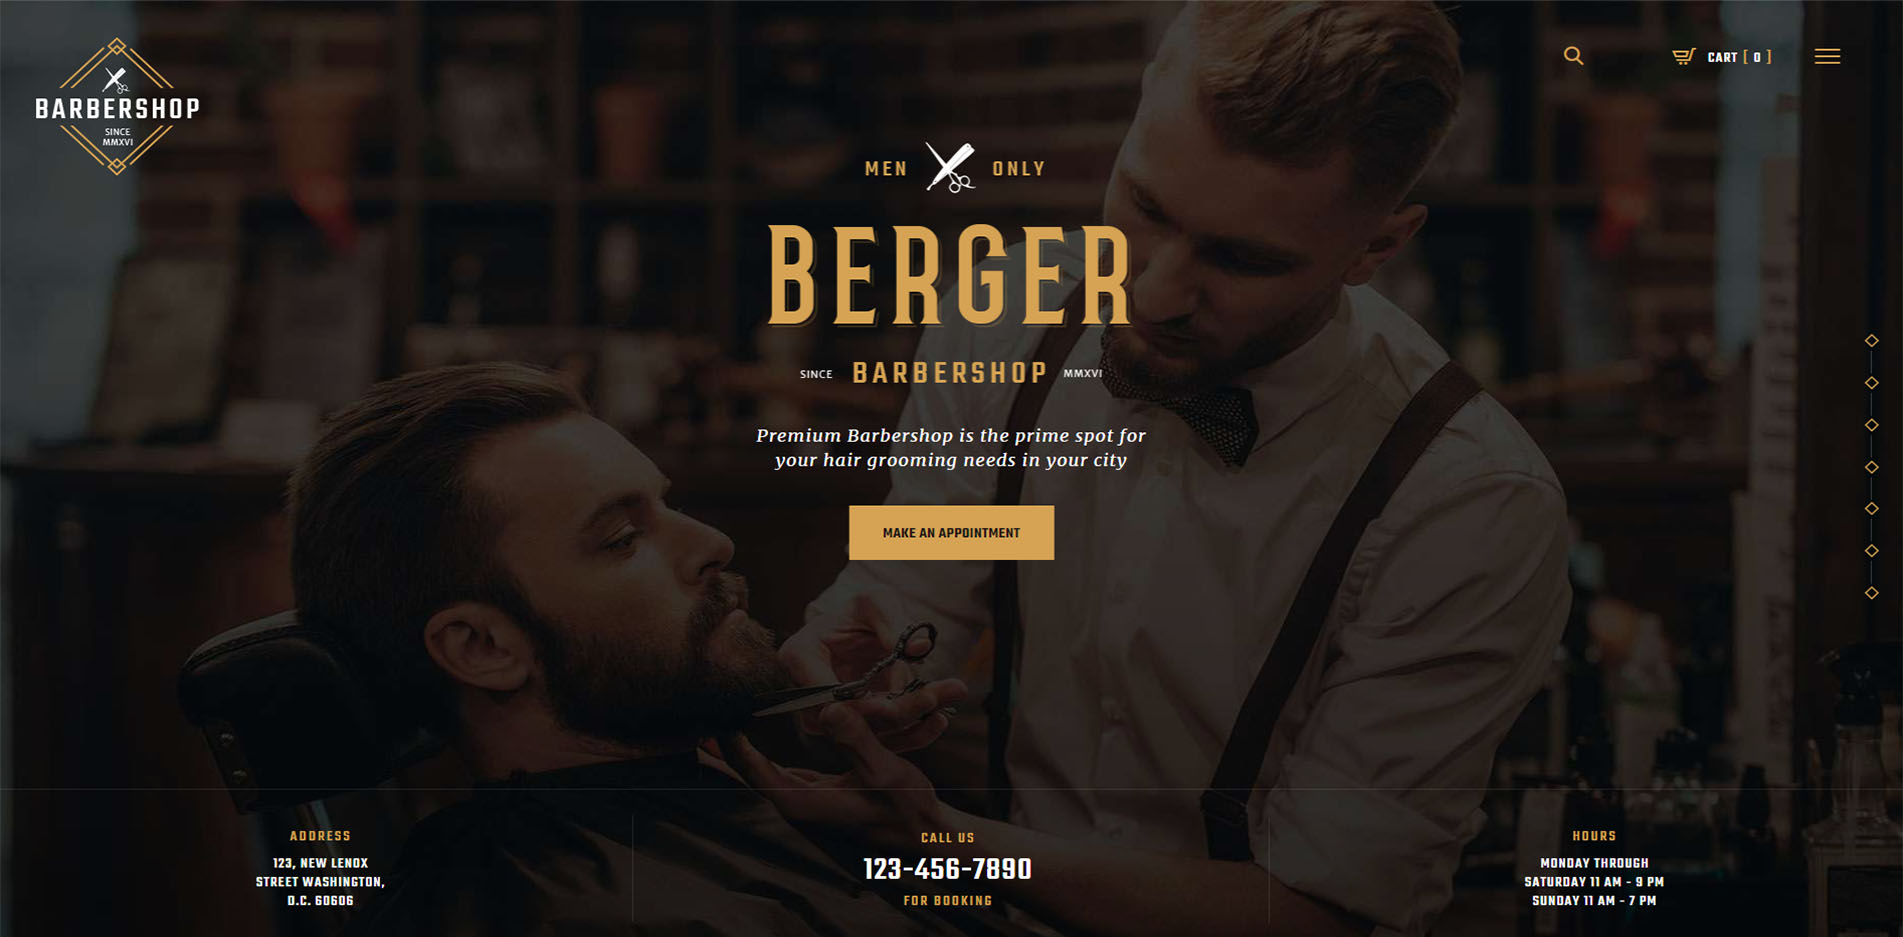 Barber Shop Website Design #3